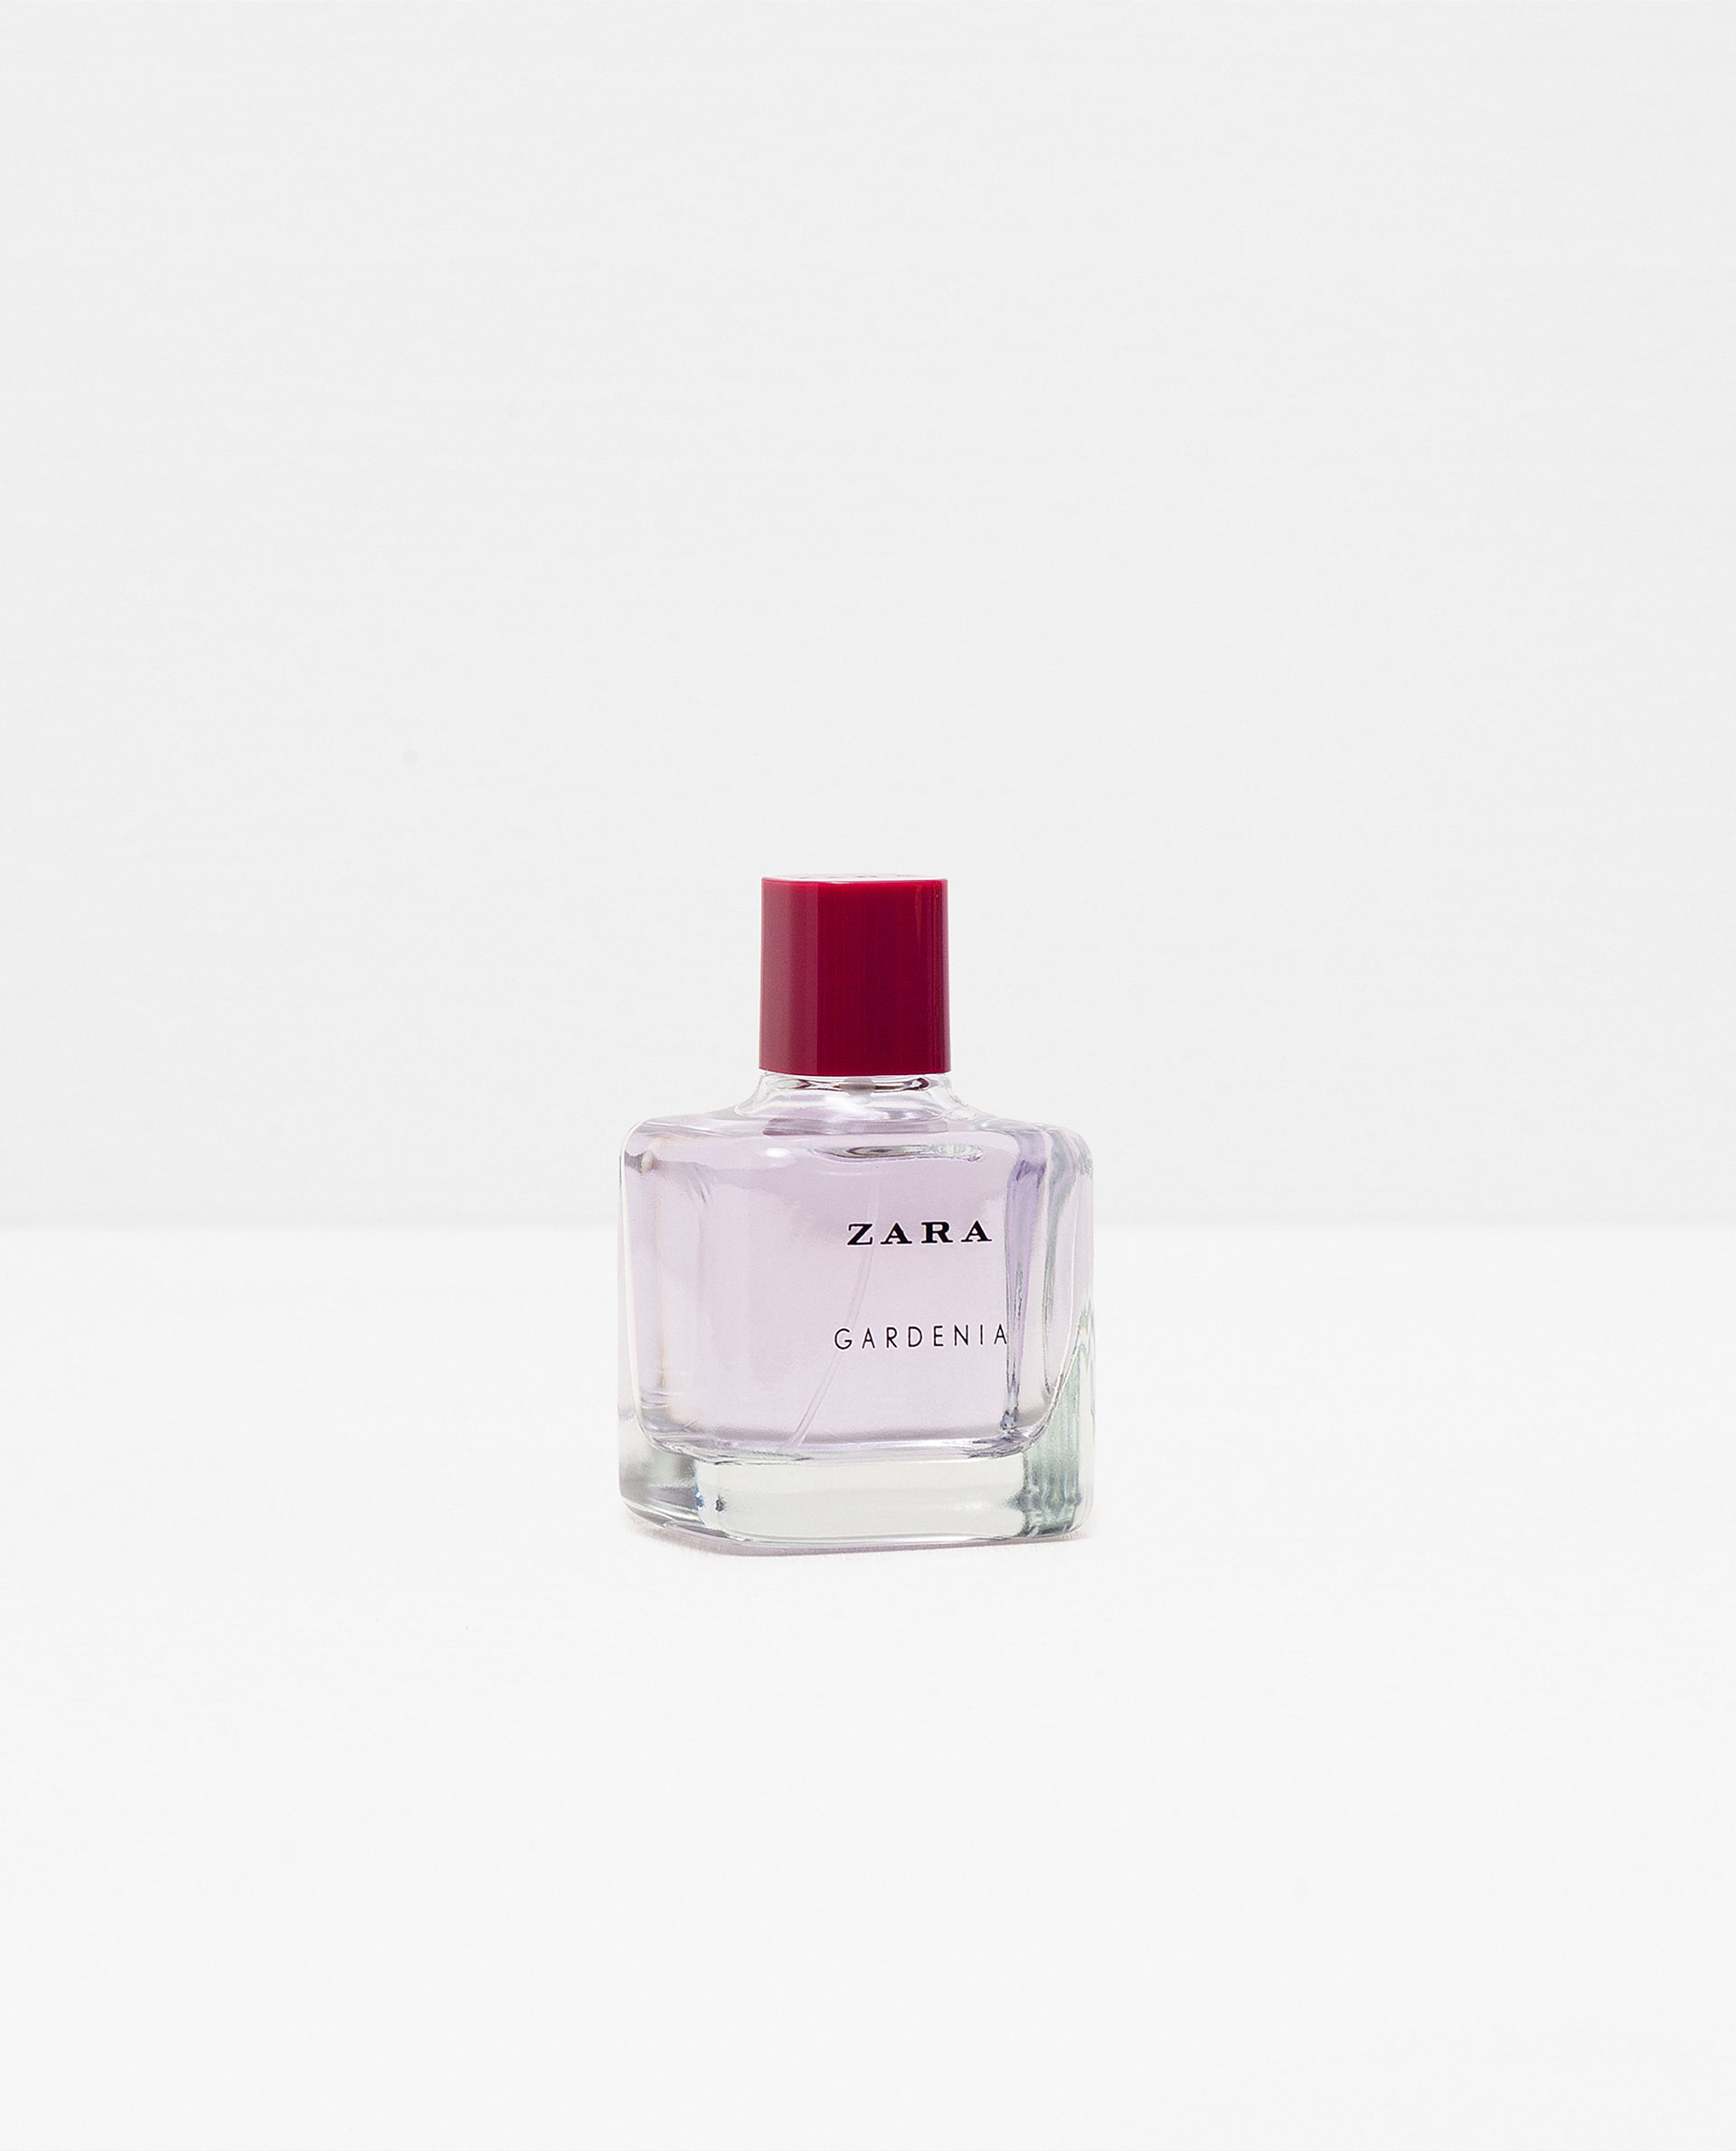 Zara Gardenia 2016 Zara perfume - a new fragrance for women 2016